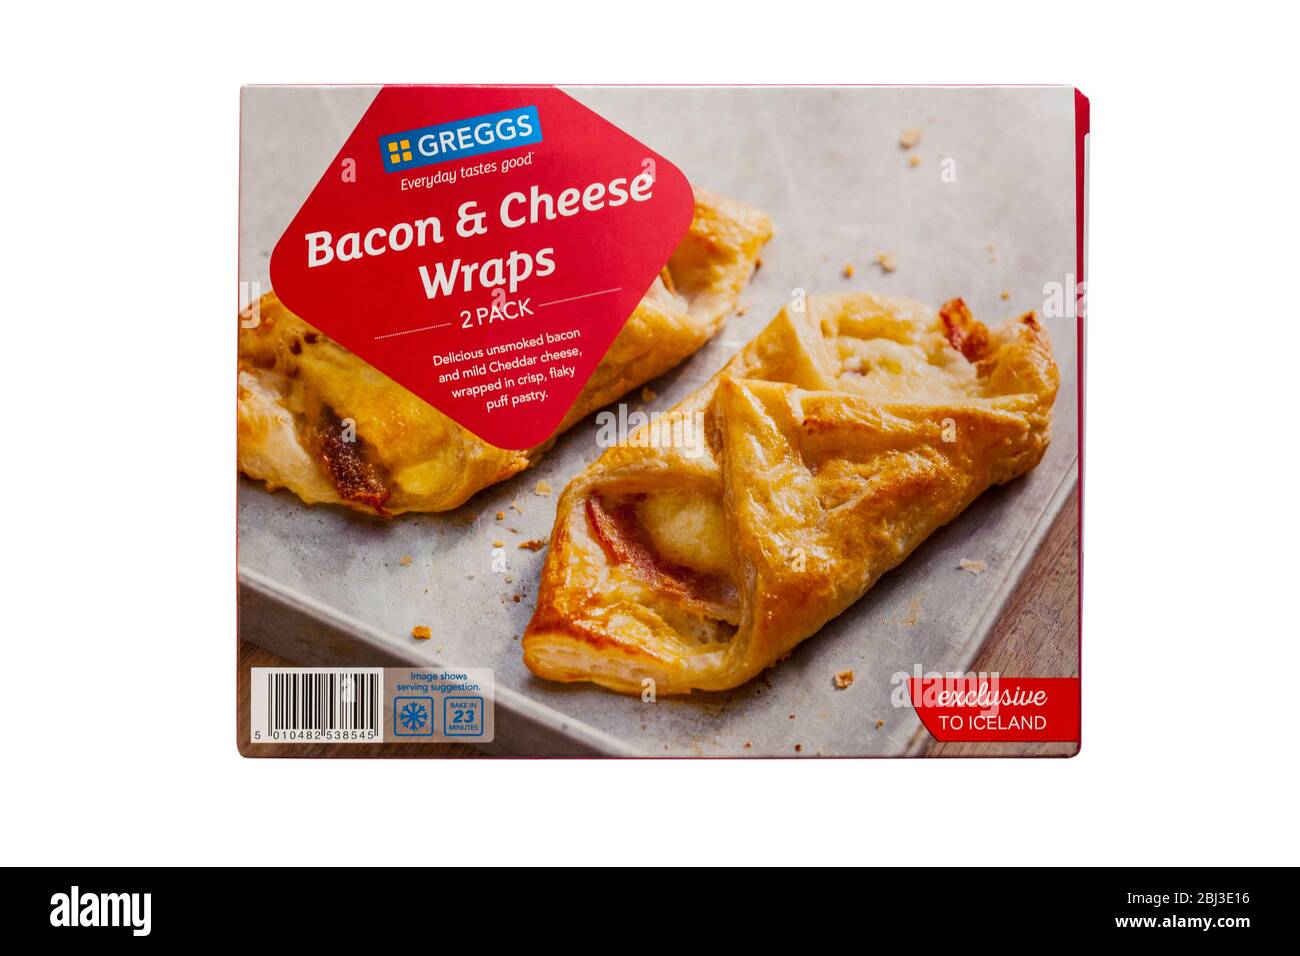 Boîte de bacon et de fromage Greggs enveloppés exclusivement à l'Islande isolée sur fond blanc Banque D'Images